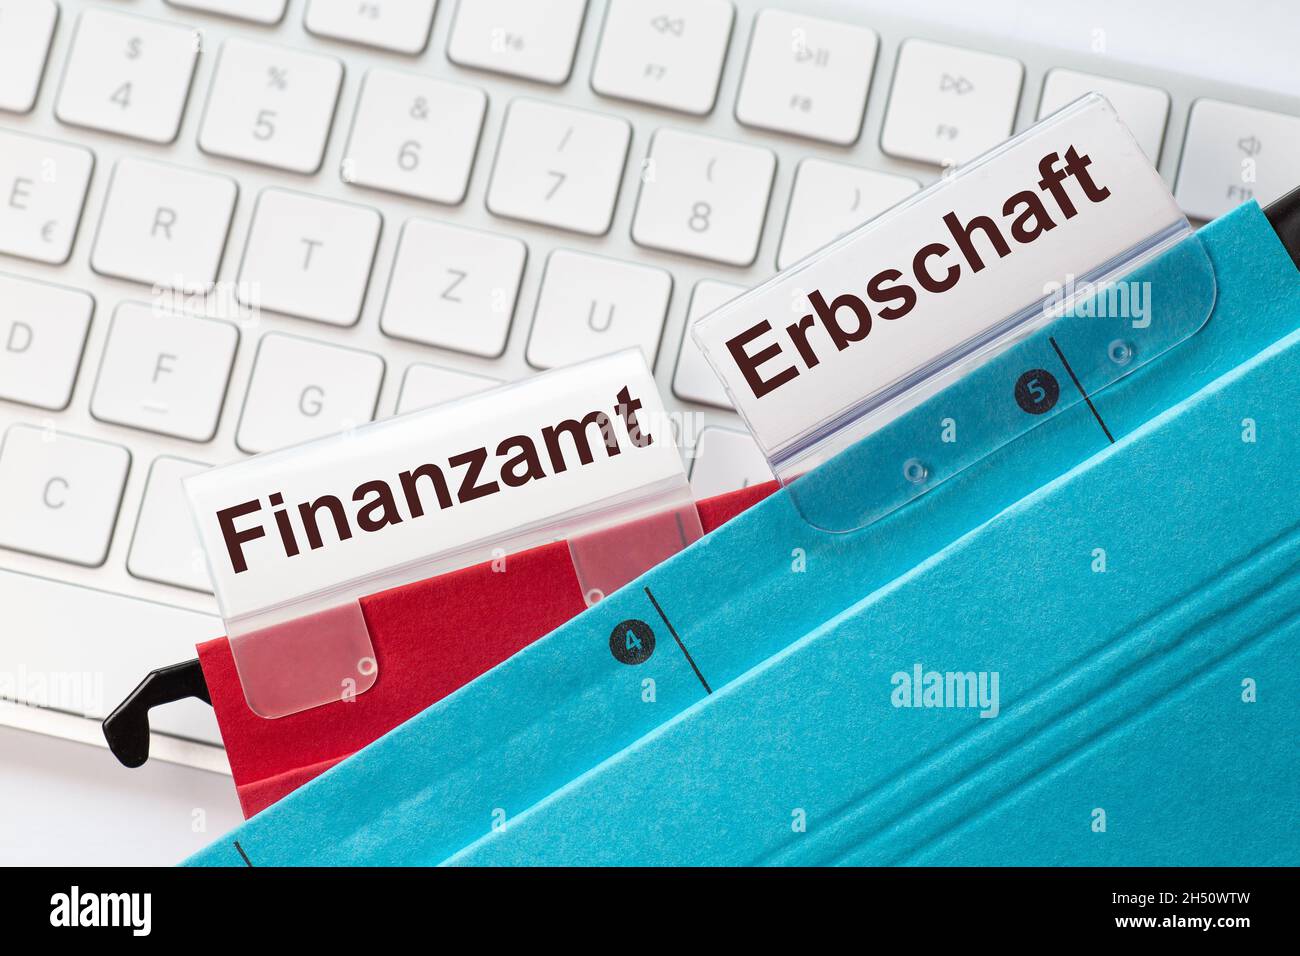 Les mots allemands bureau d'impôt et héritage peuvent être vus sur les étiquettes d'un rouge et bleu dossiers suspendus.Les dossiers suspendus se trouvent sur un clavier d'ordinateur Banque D'Images